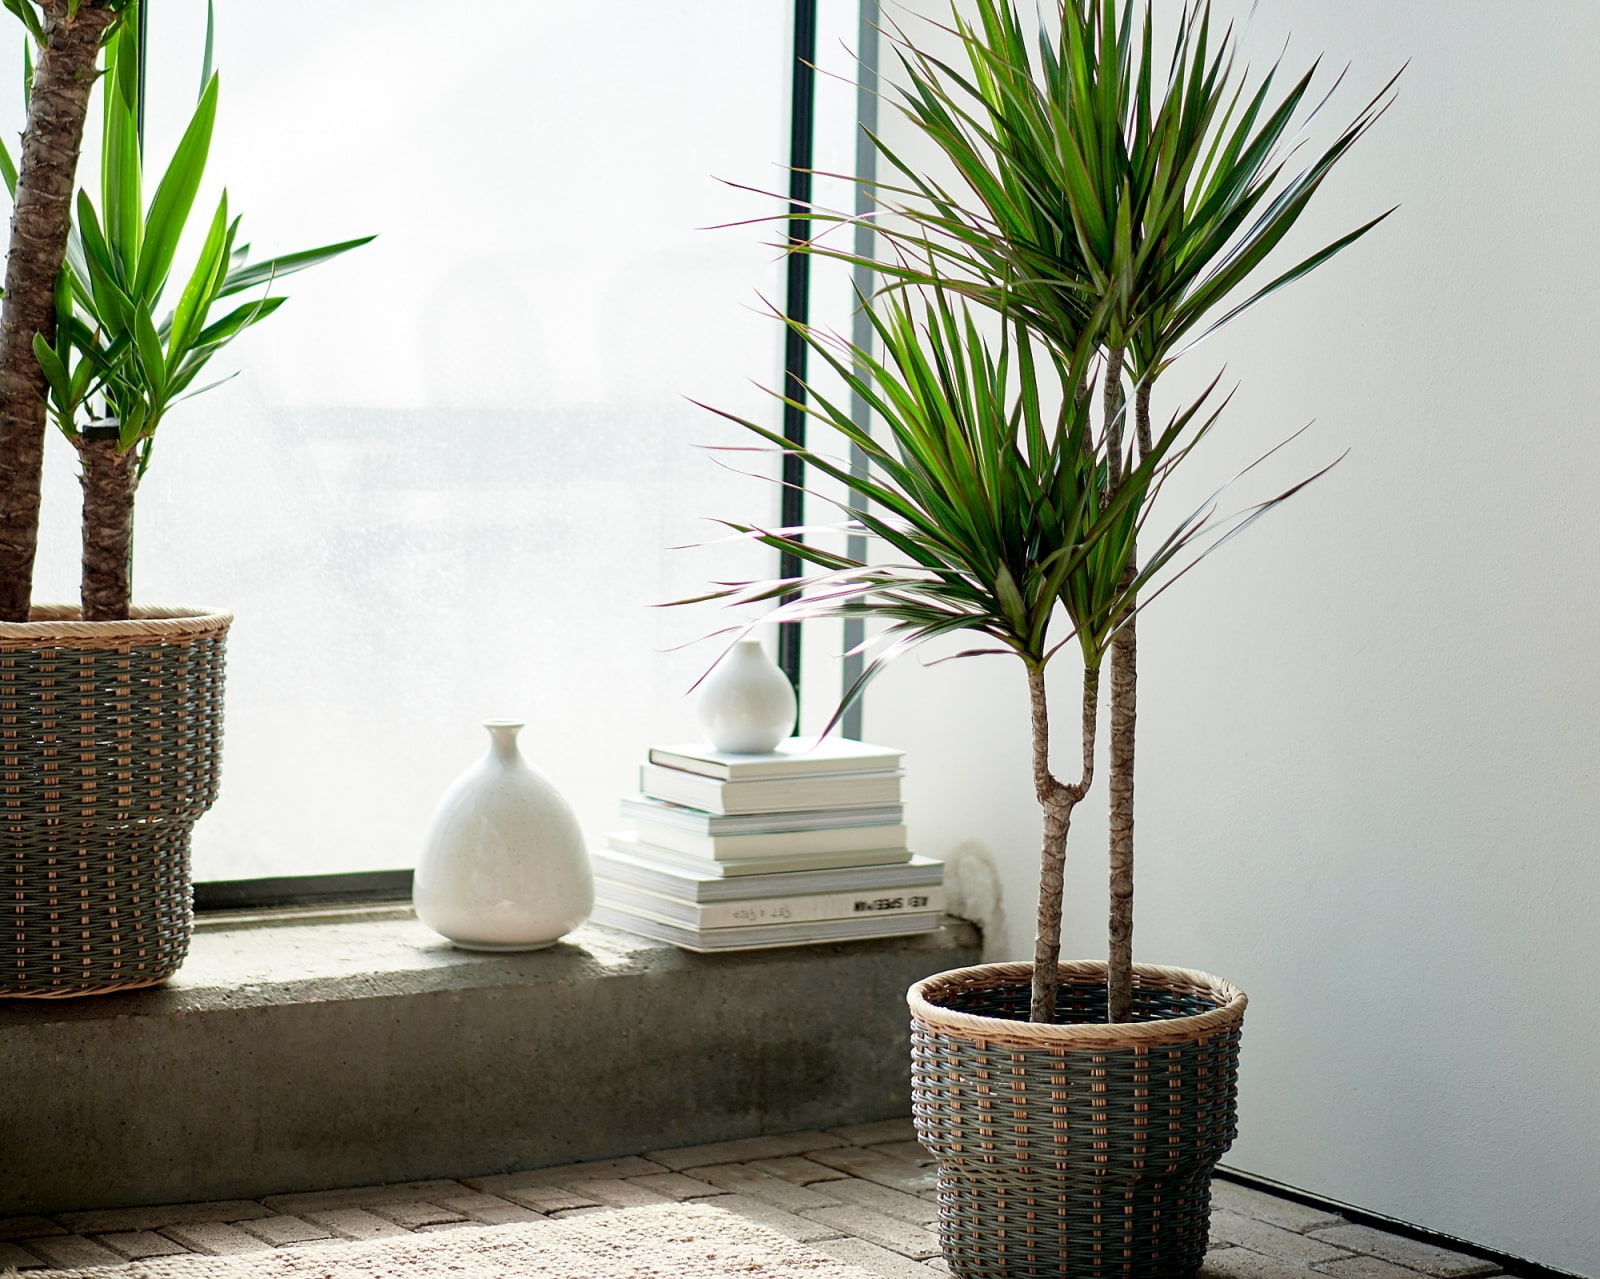 10 комнатных растений, которым комфортно в тени